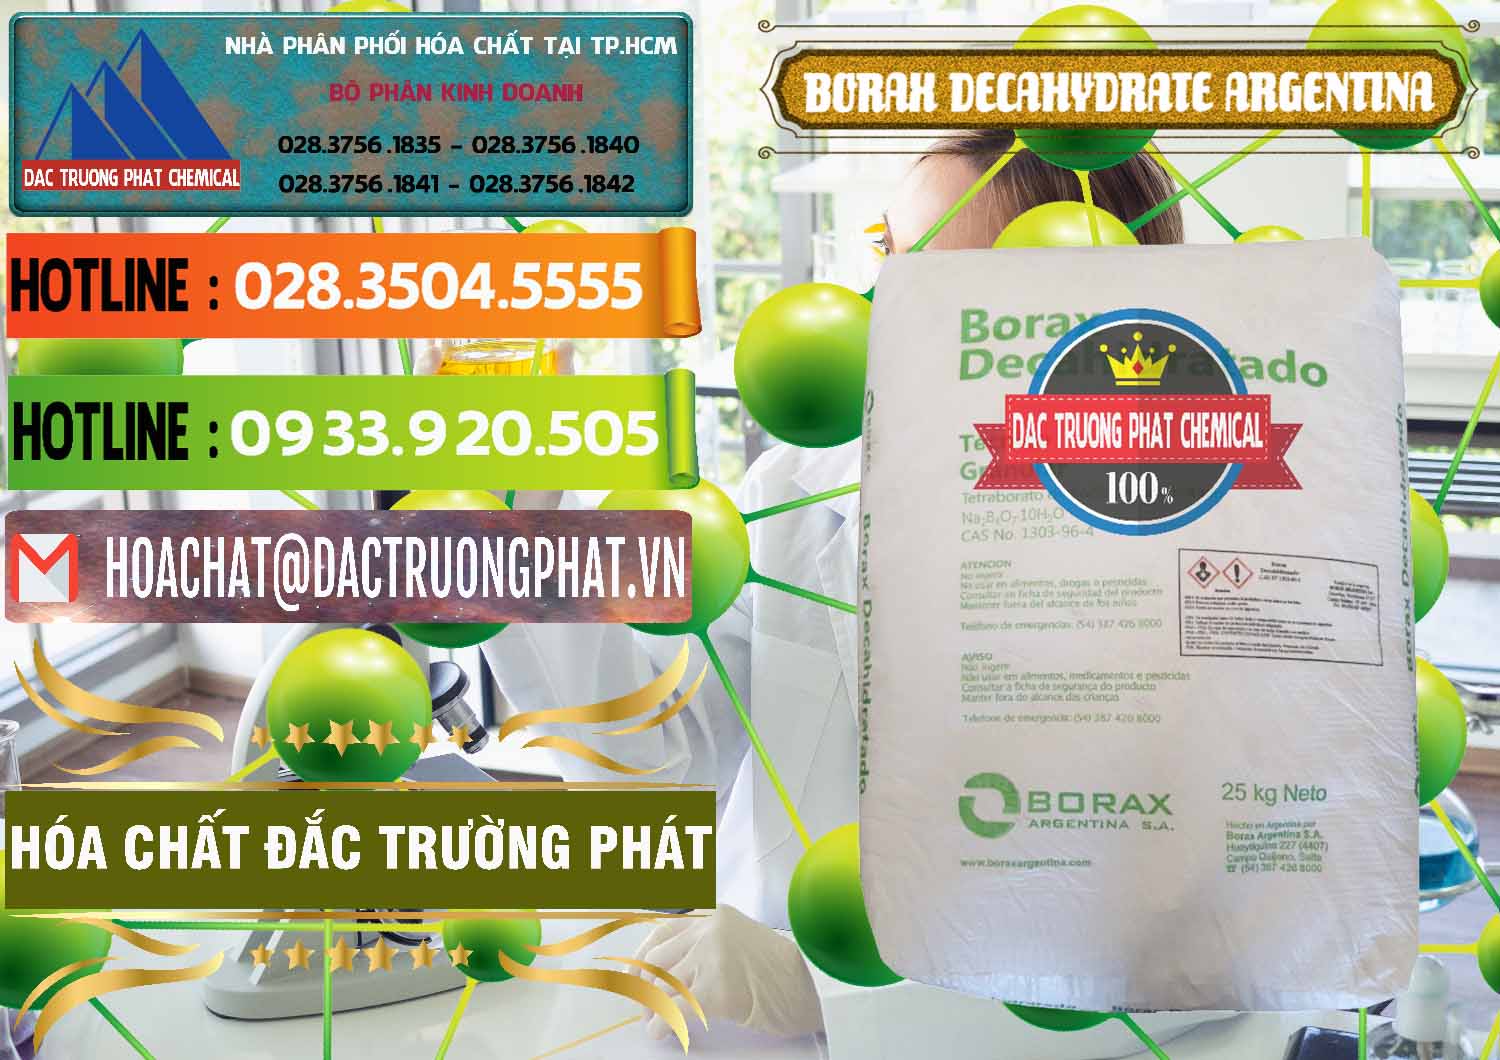 Công ty bán _ phân phối Borax Decahydrate Argentina - 0446 - Cty phân phối - cung ứng hóa chất tại TP.HCM - cungcaphoachat.com.vn